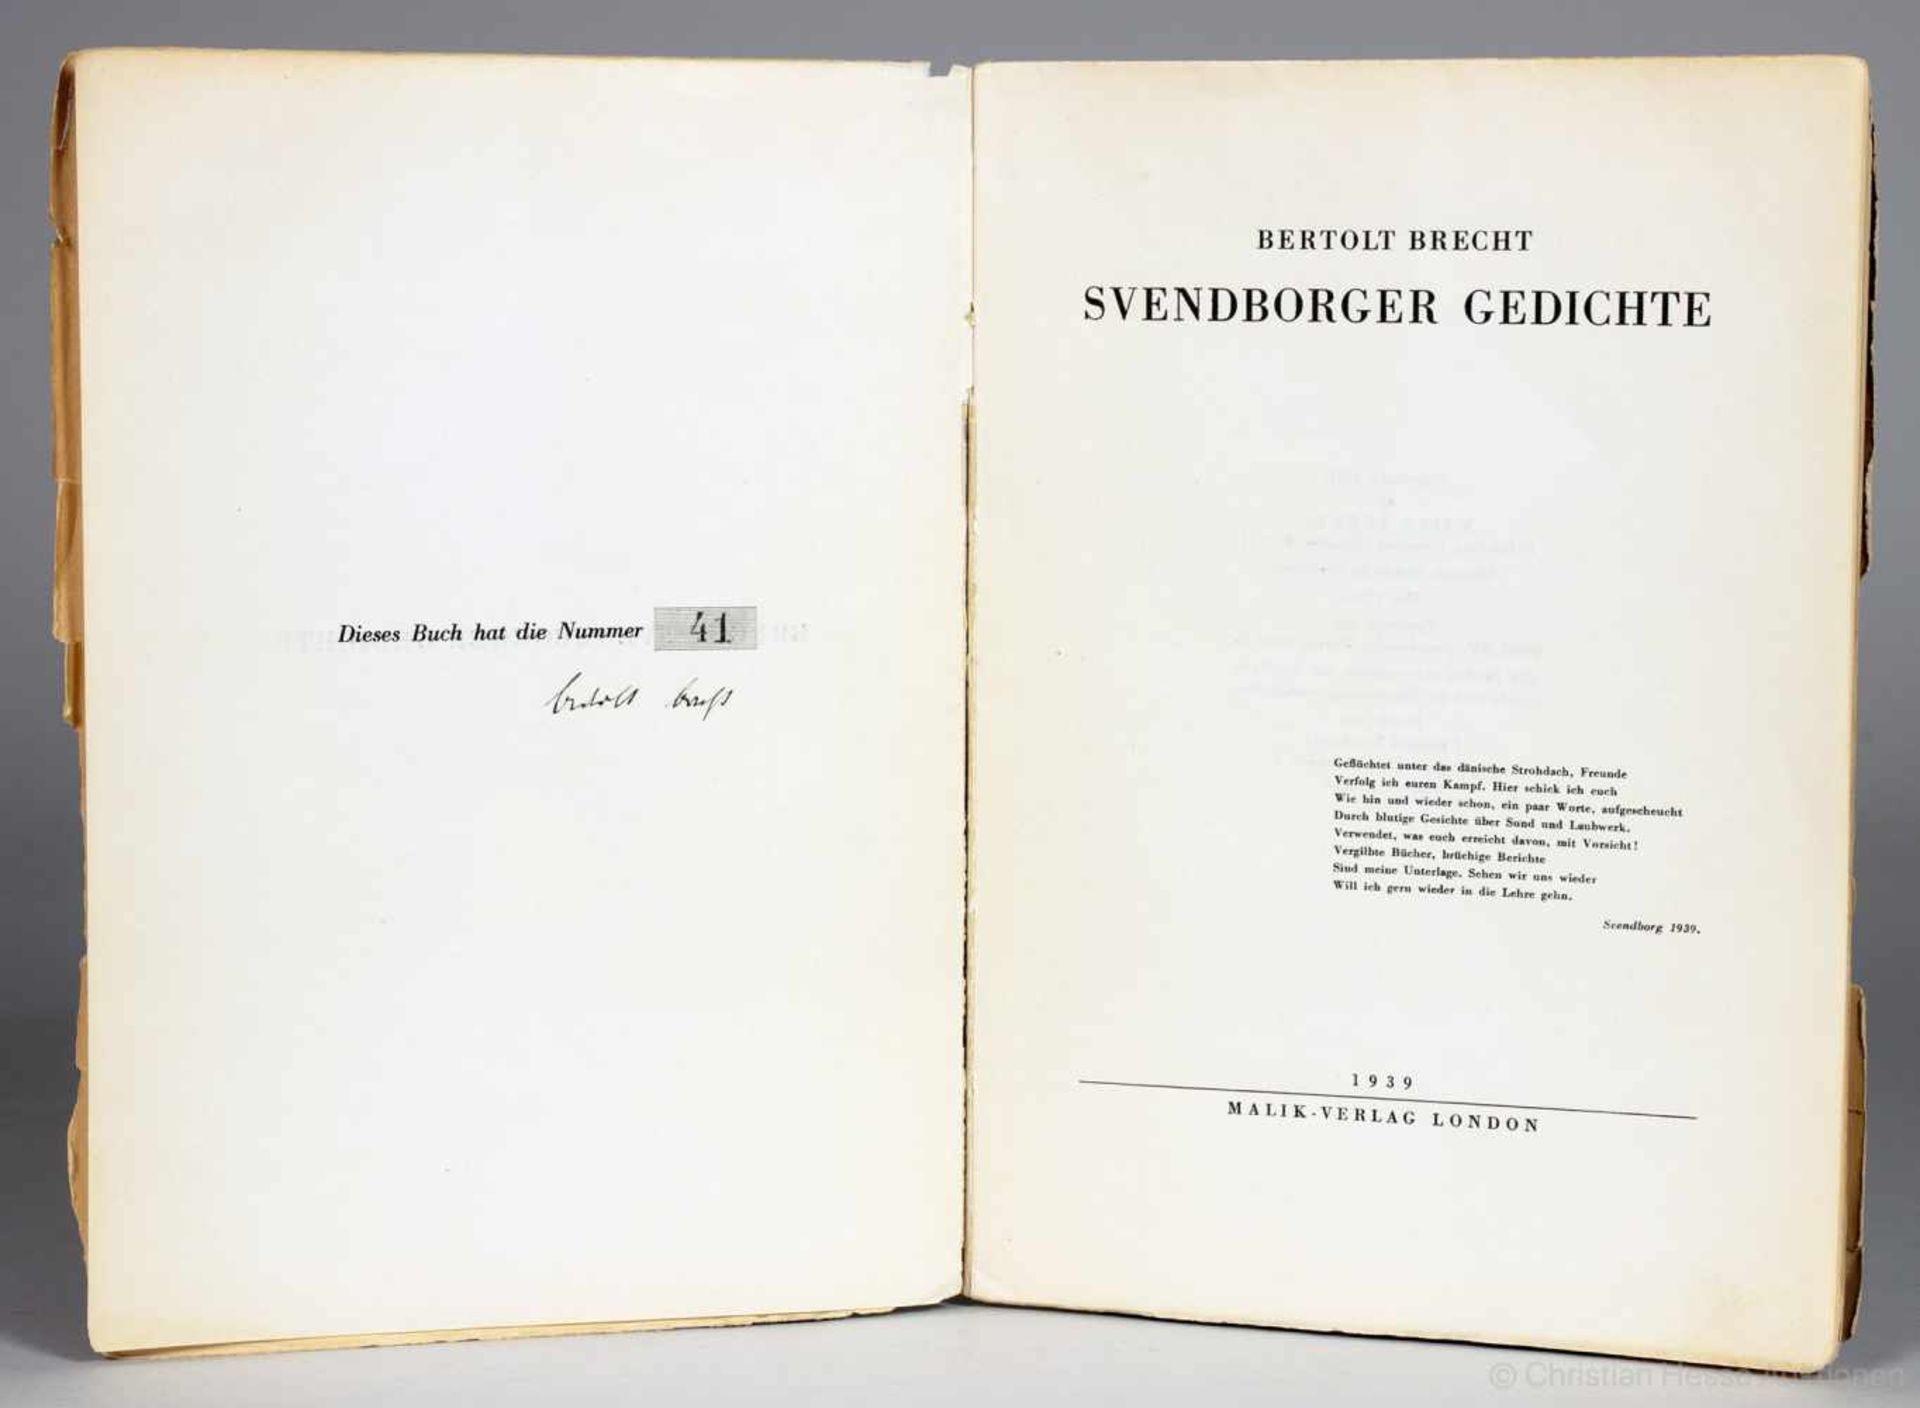 Bertolt Brecht. Svendborger Gedichte. London, Malik 1939. Originalbroschur.Erste Ausgabe. - Eins von